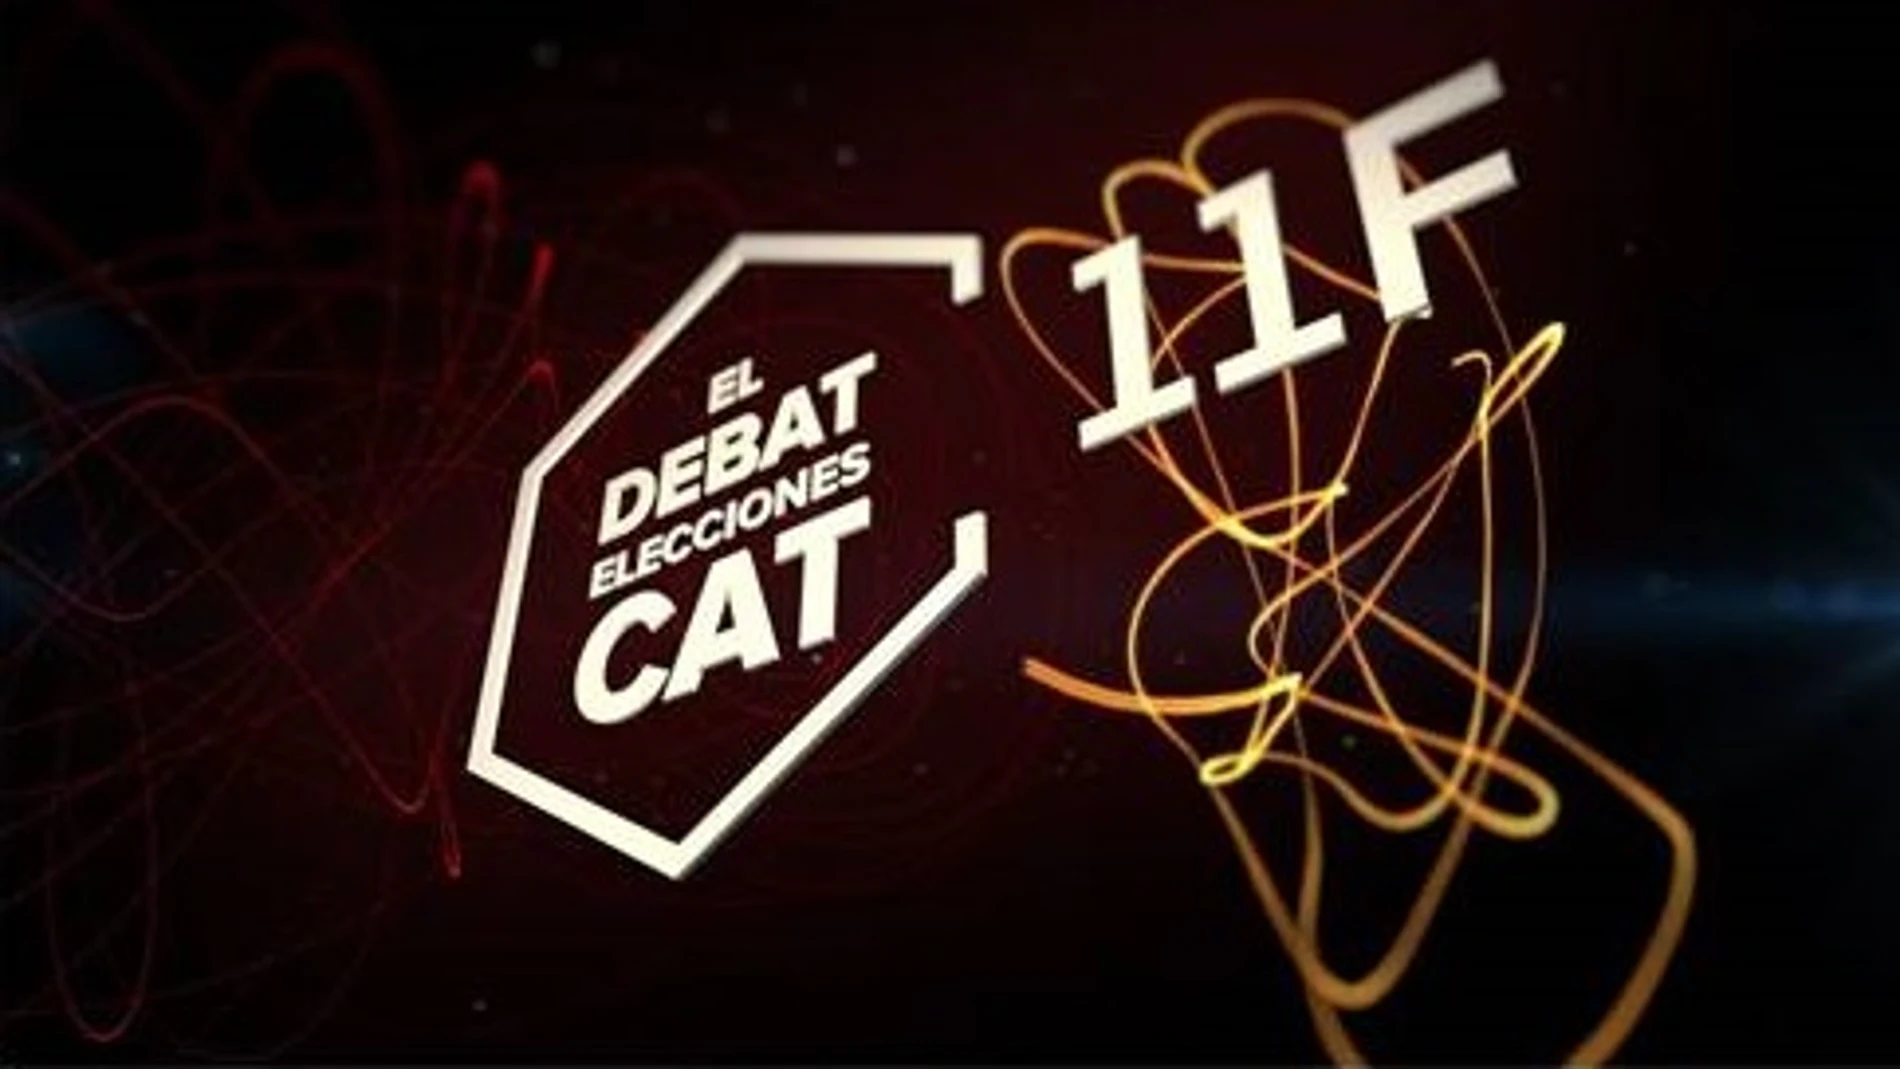 'El Debat', un encuentro decisivo en las elecciones catalanas del 14-F